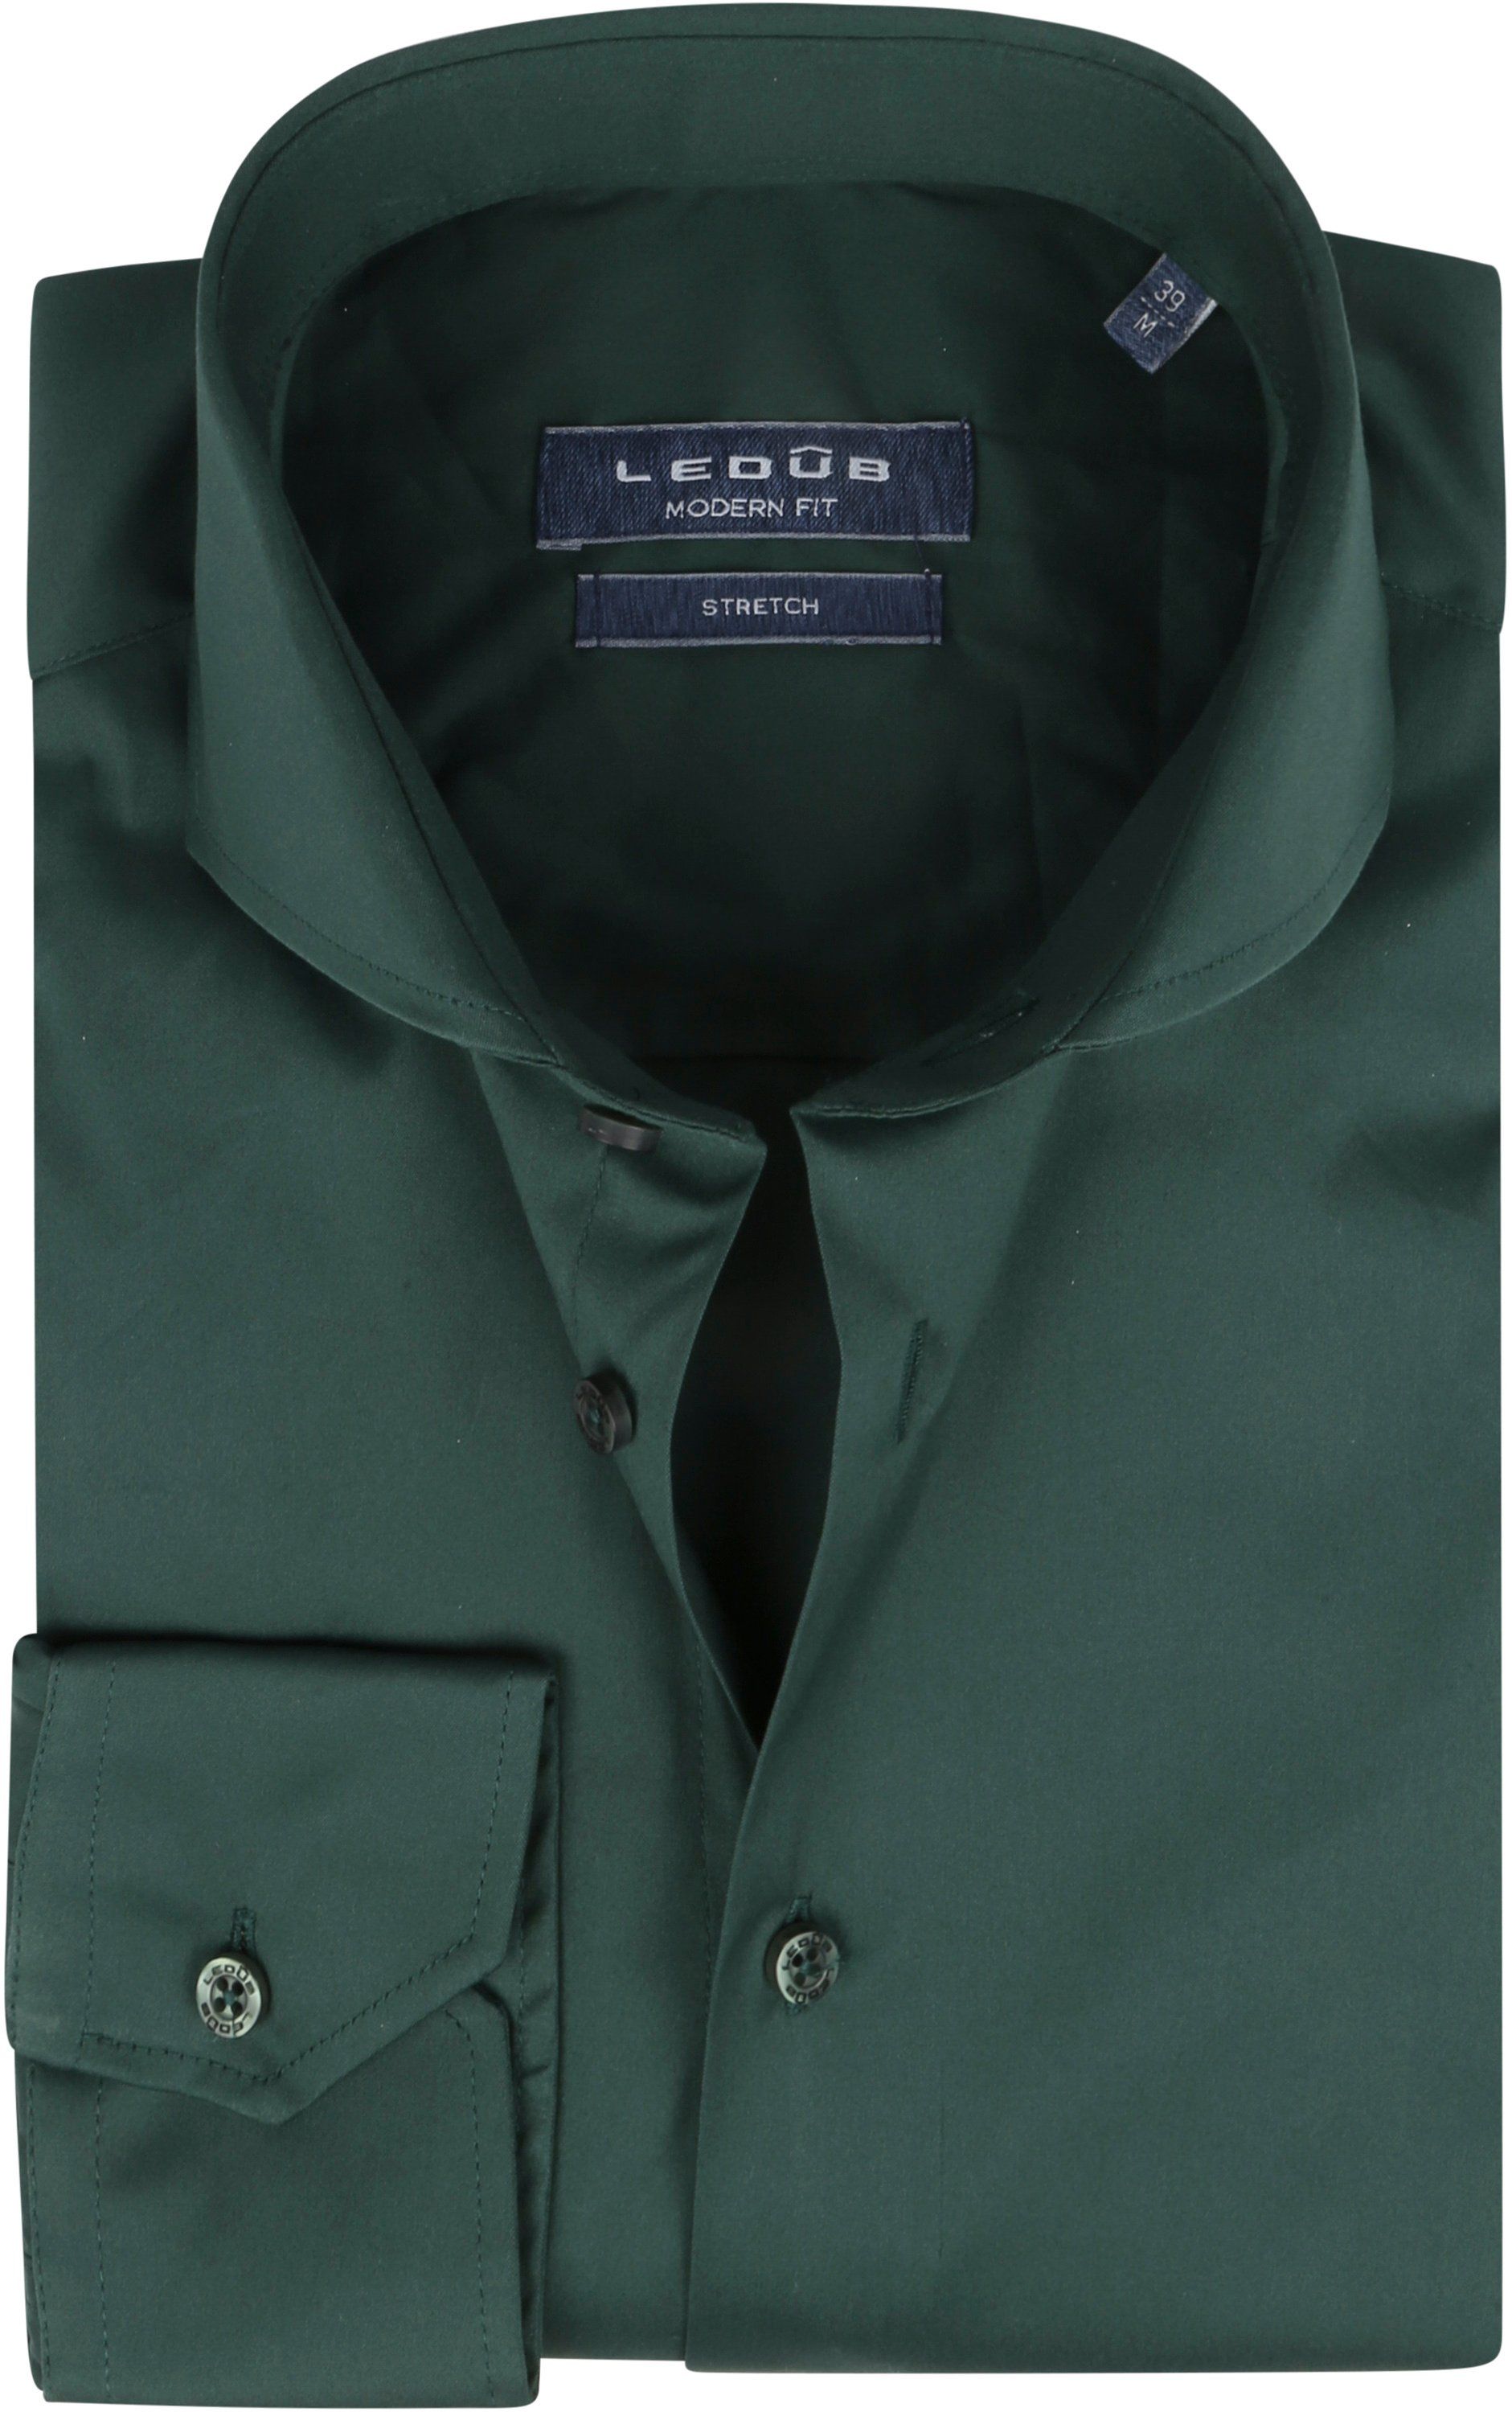 Ledub Shirt Dark Green Dark Green size 15 1/2